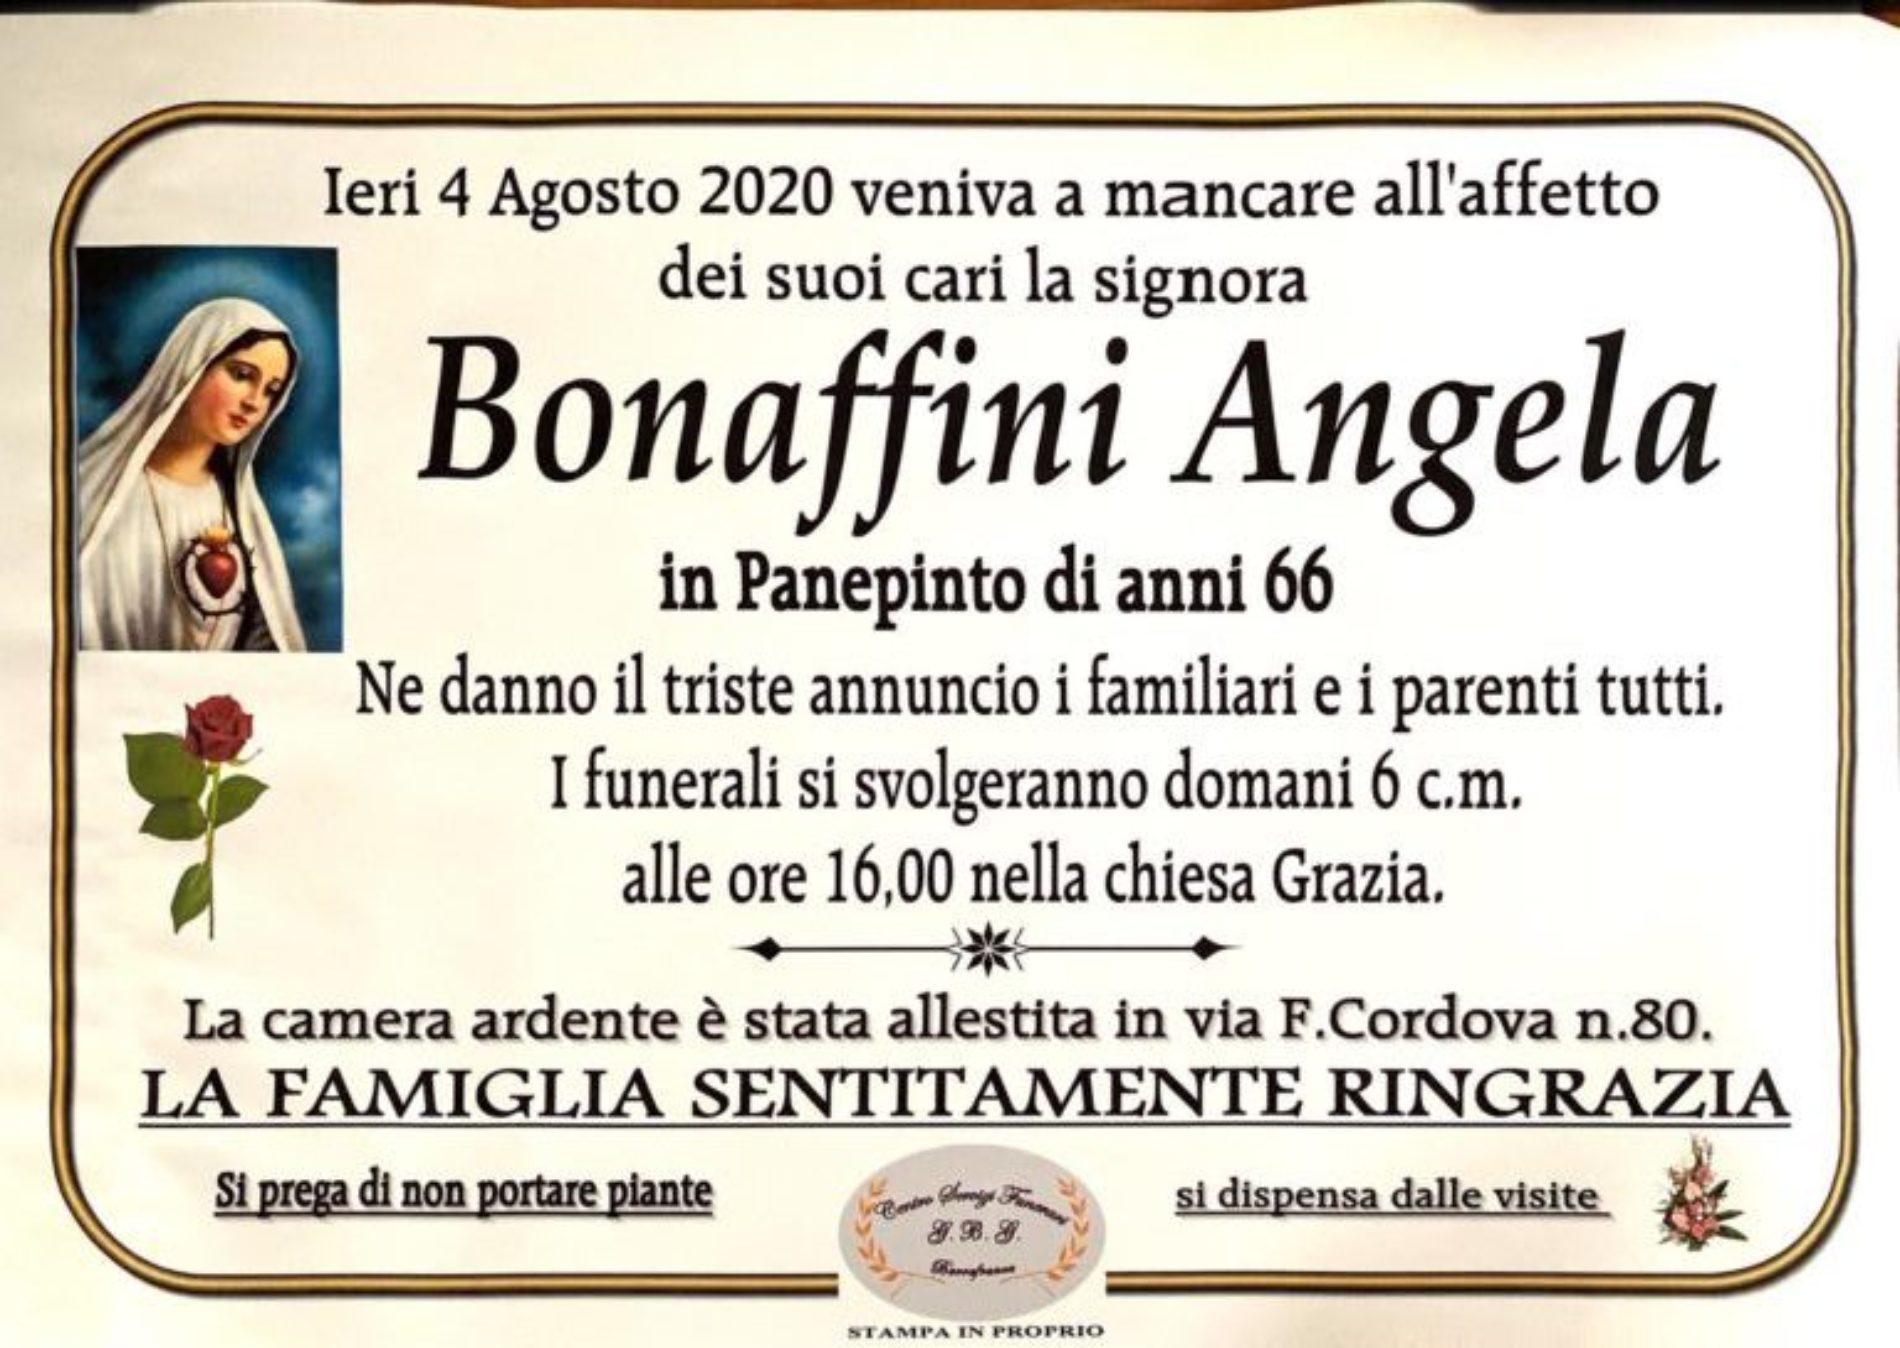 Annuncio Centro servizi funerari G.B.G Bonaffini Angela in Panepinto anni 66